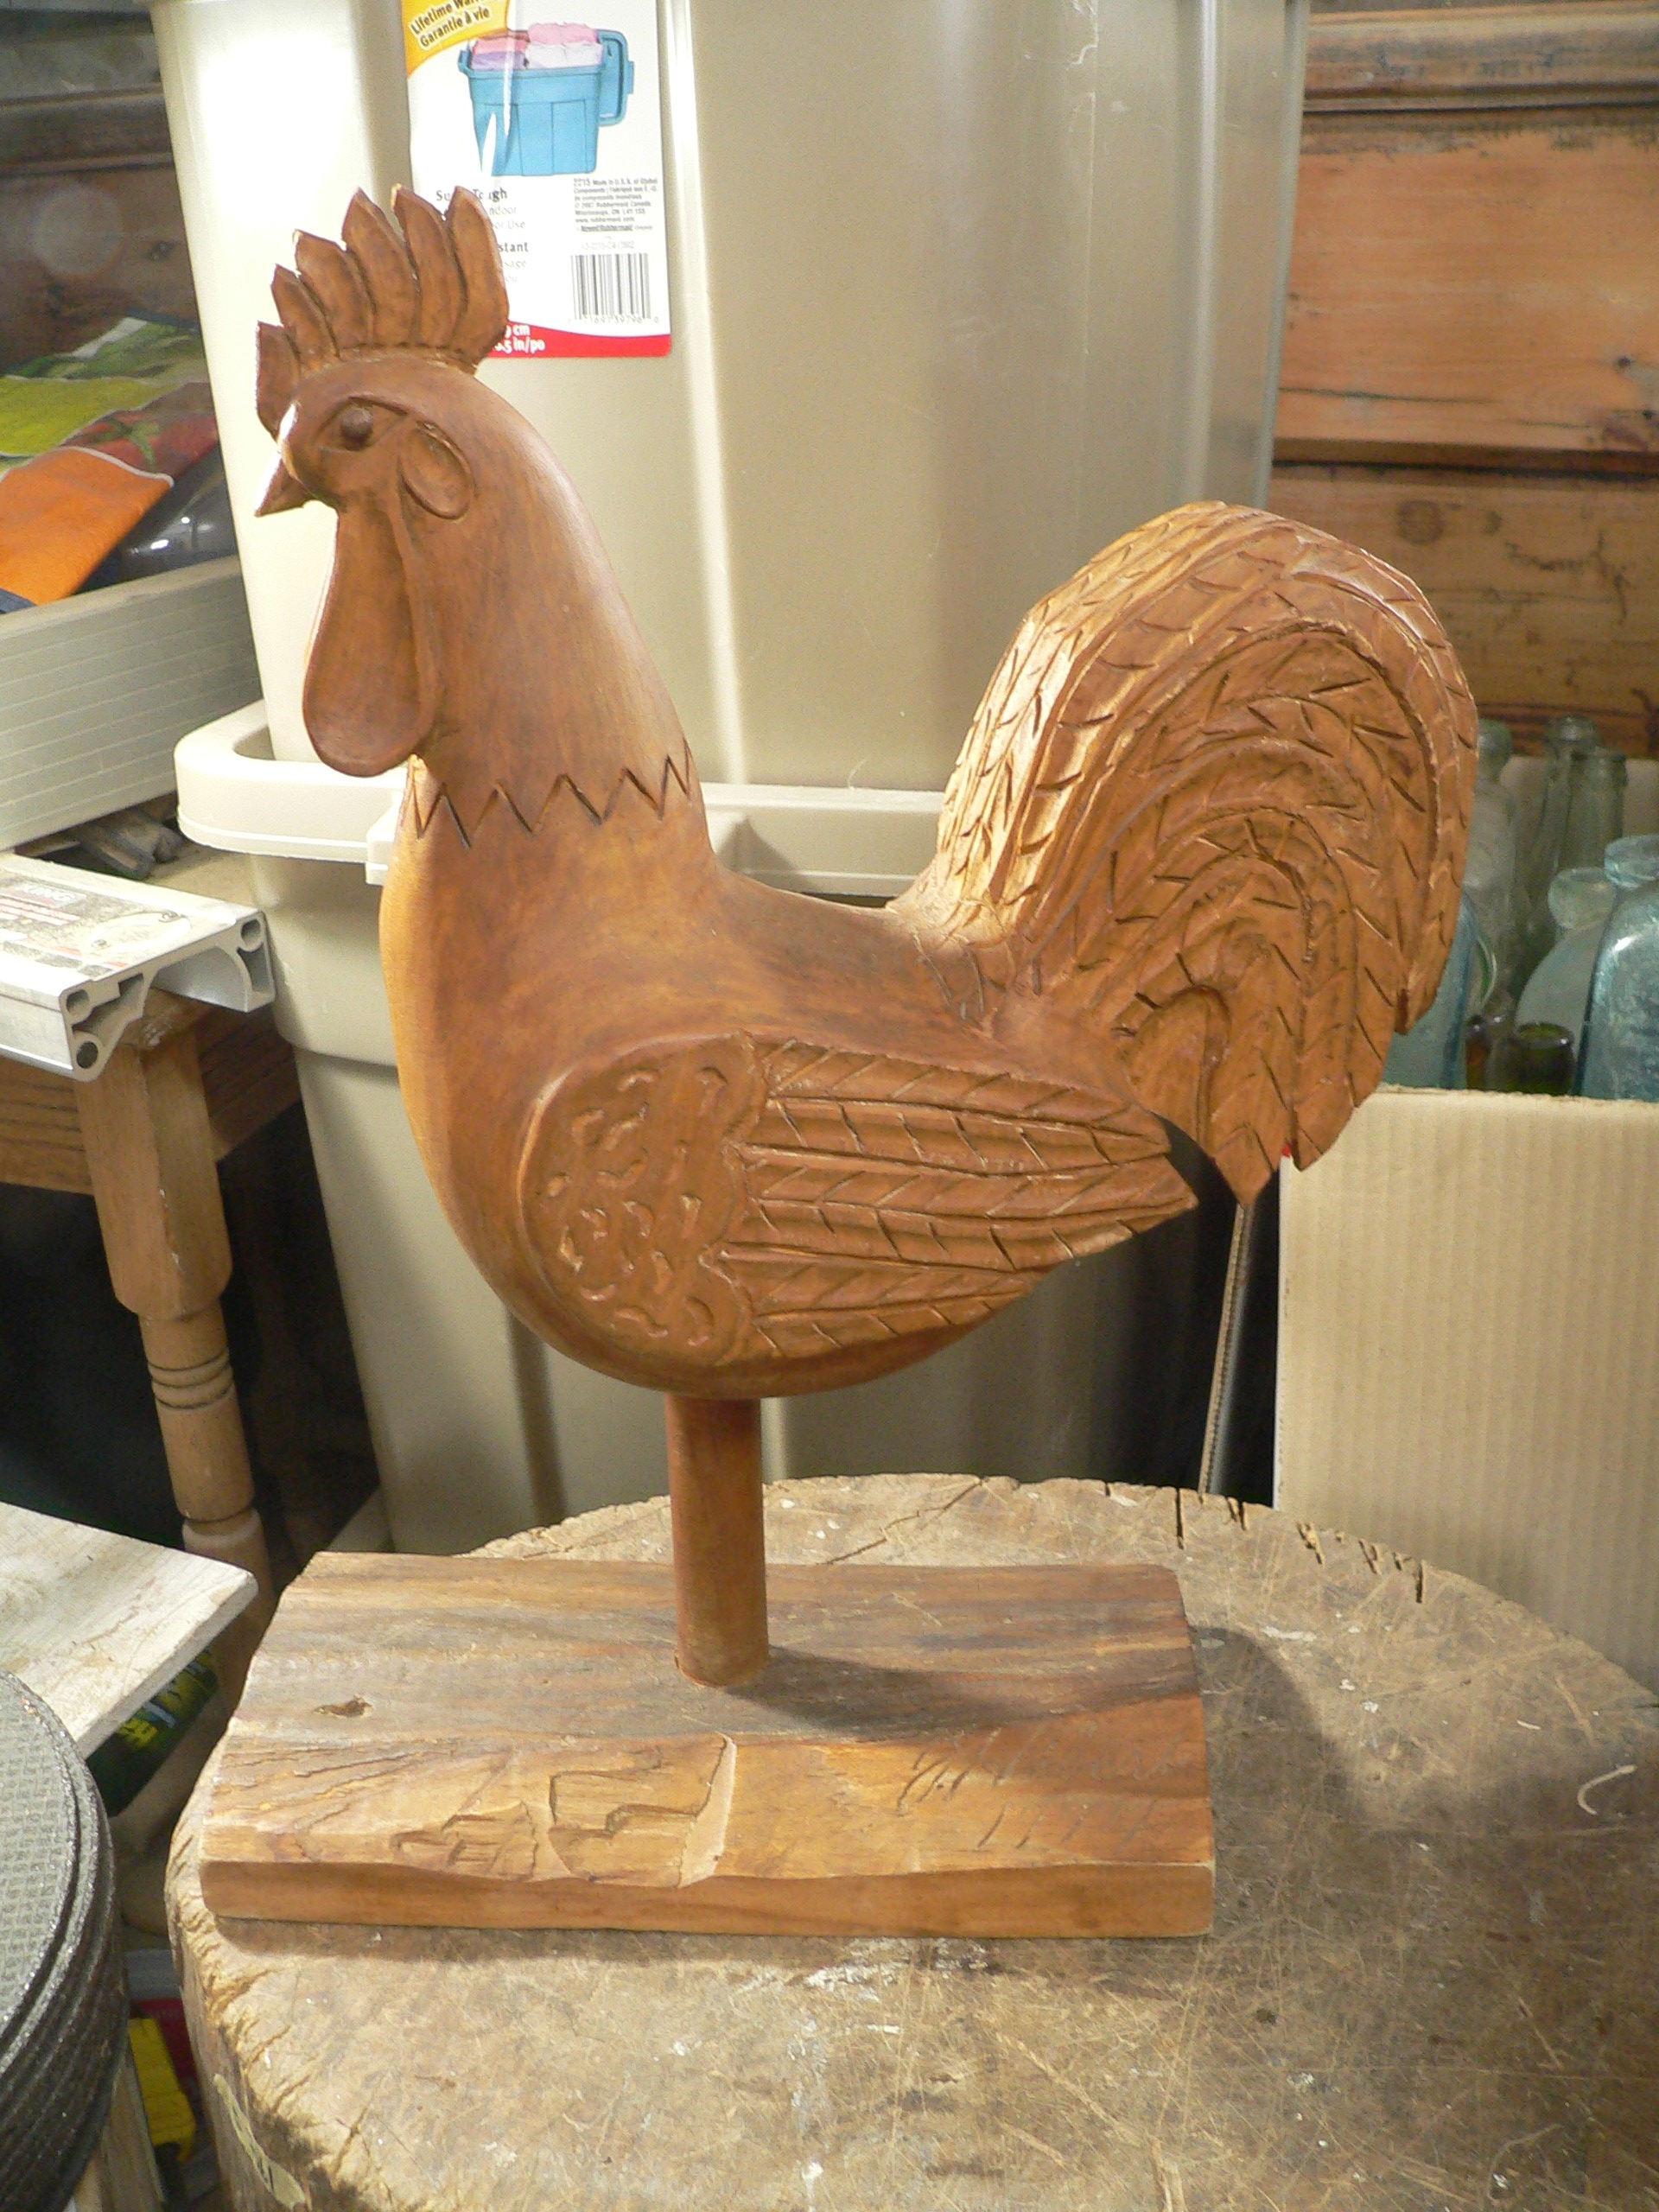 Très beau coq sculpter vintage # 8150